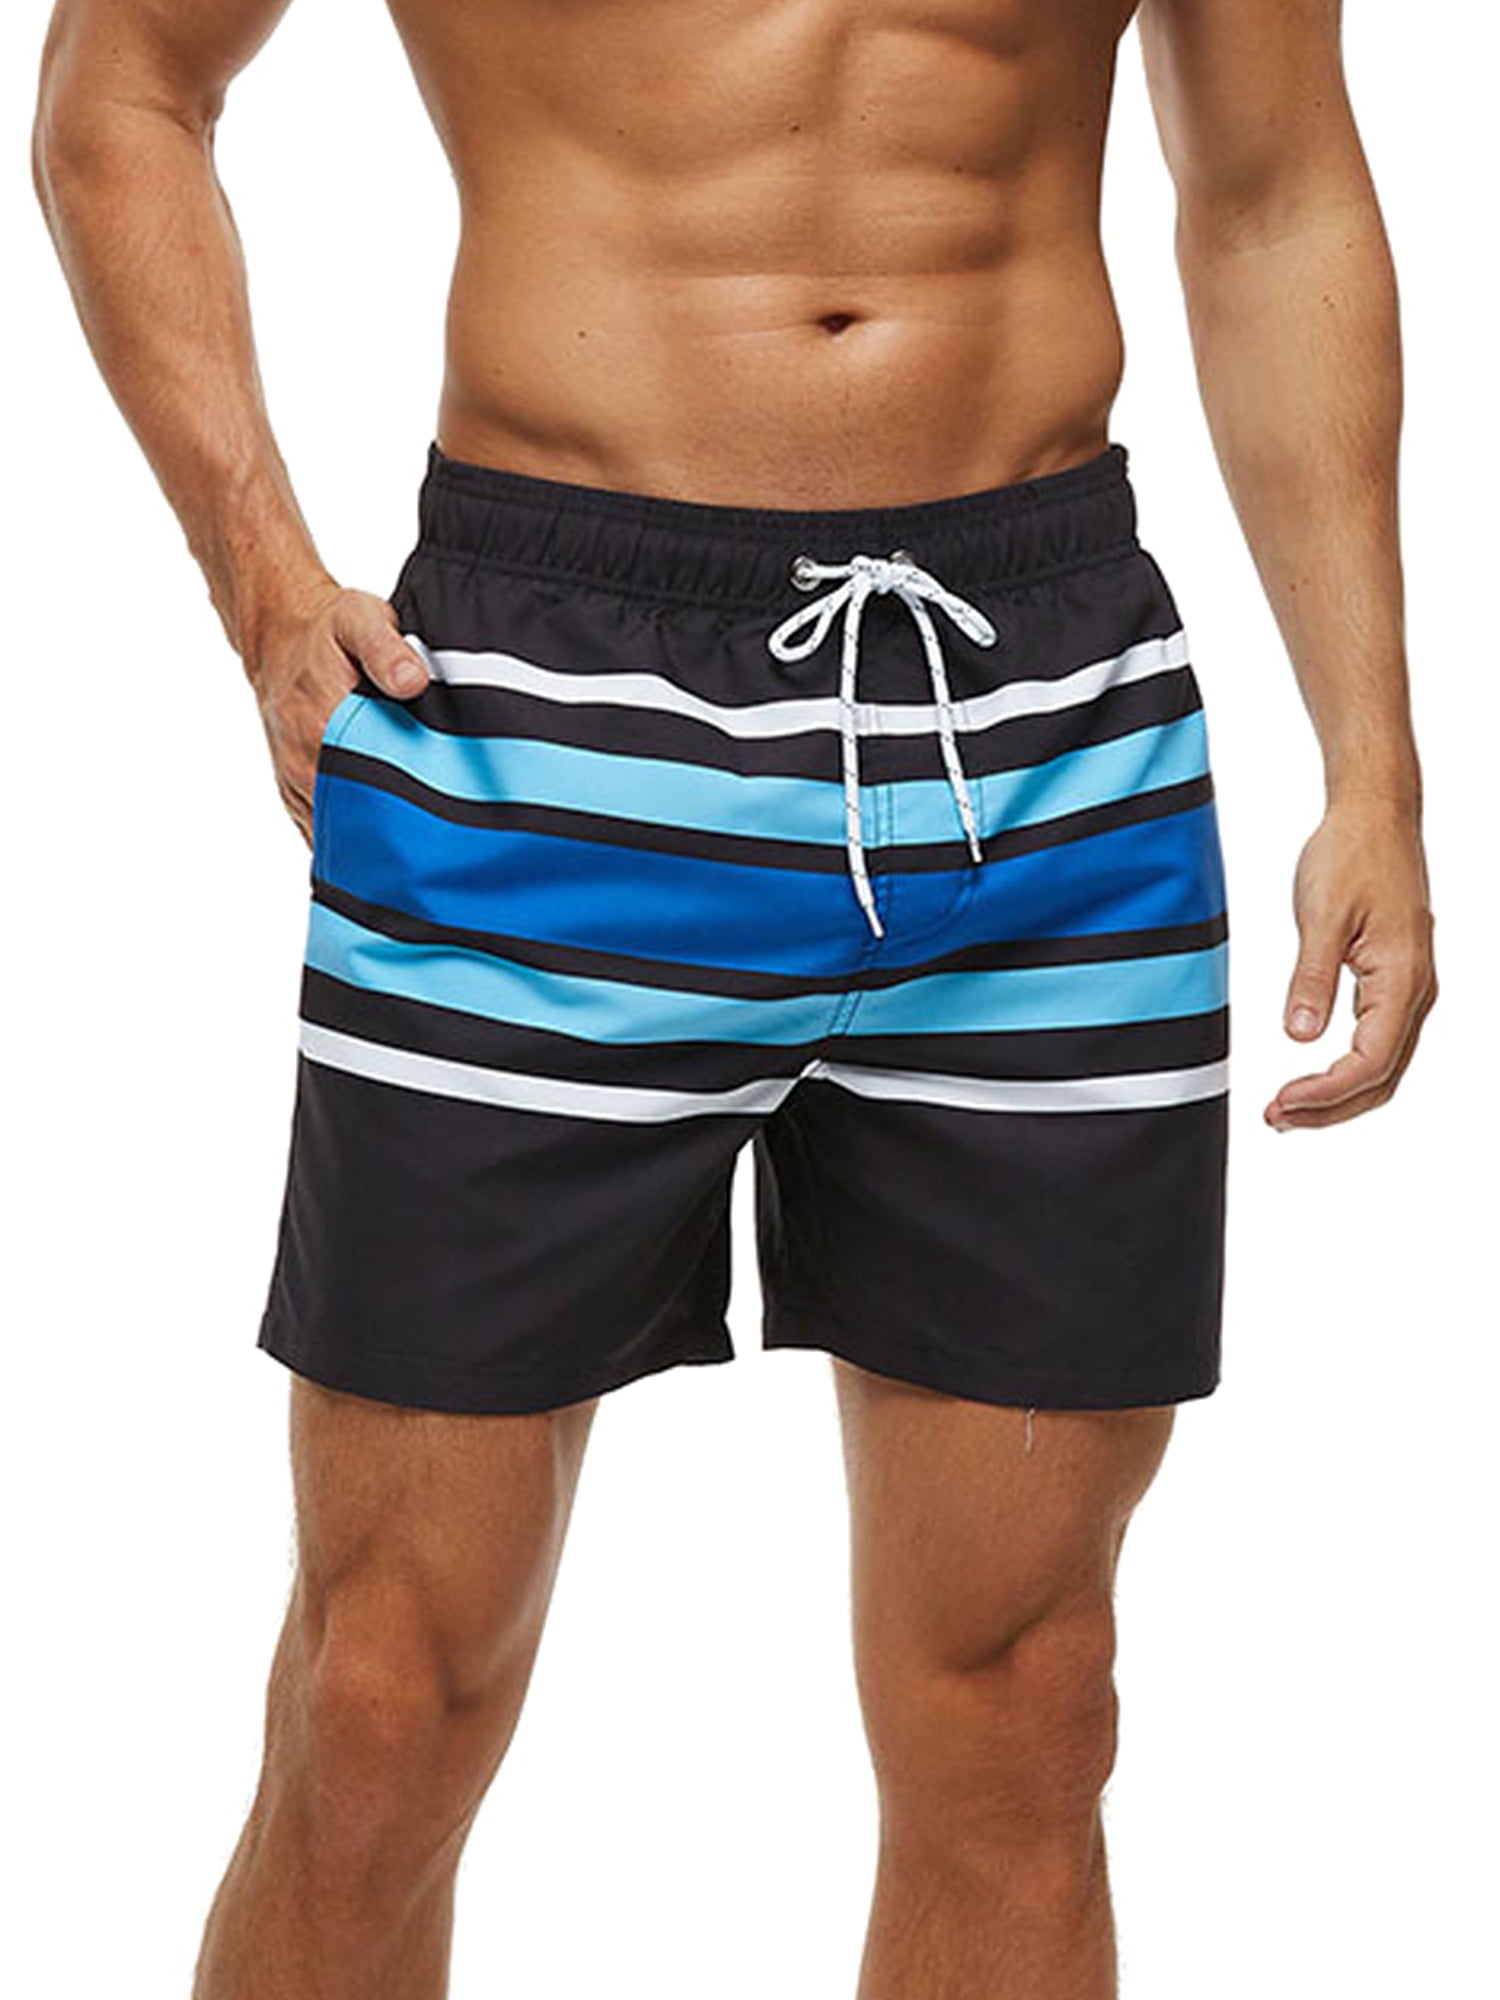 Mens Swimsuit Zipper Design Swim Trunks Sports Beach Surfing Shorts For Men 518 